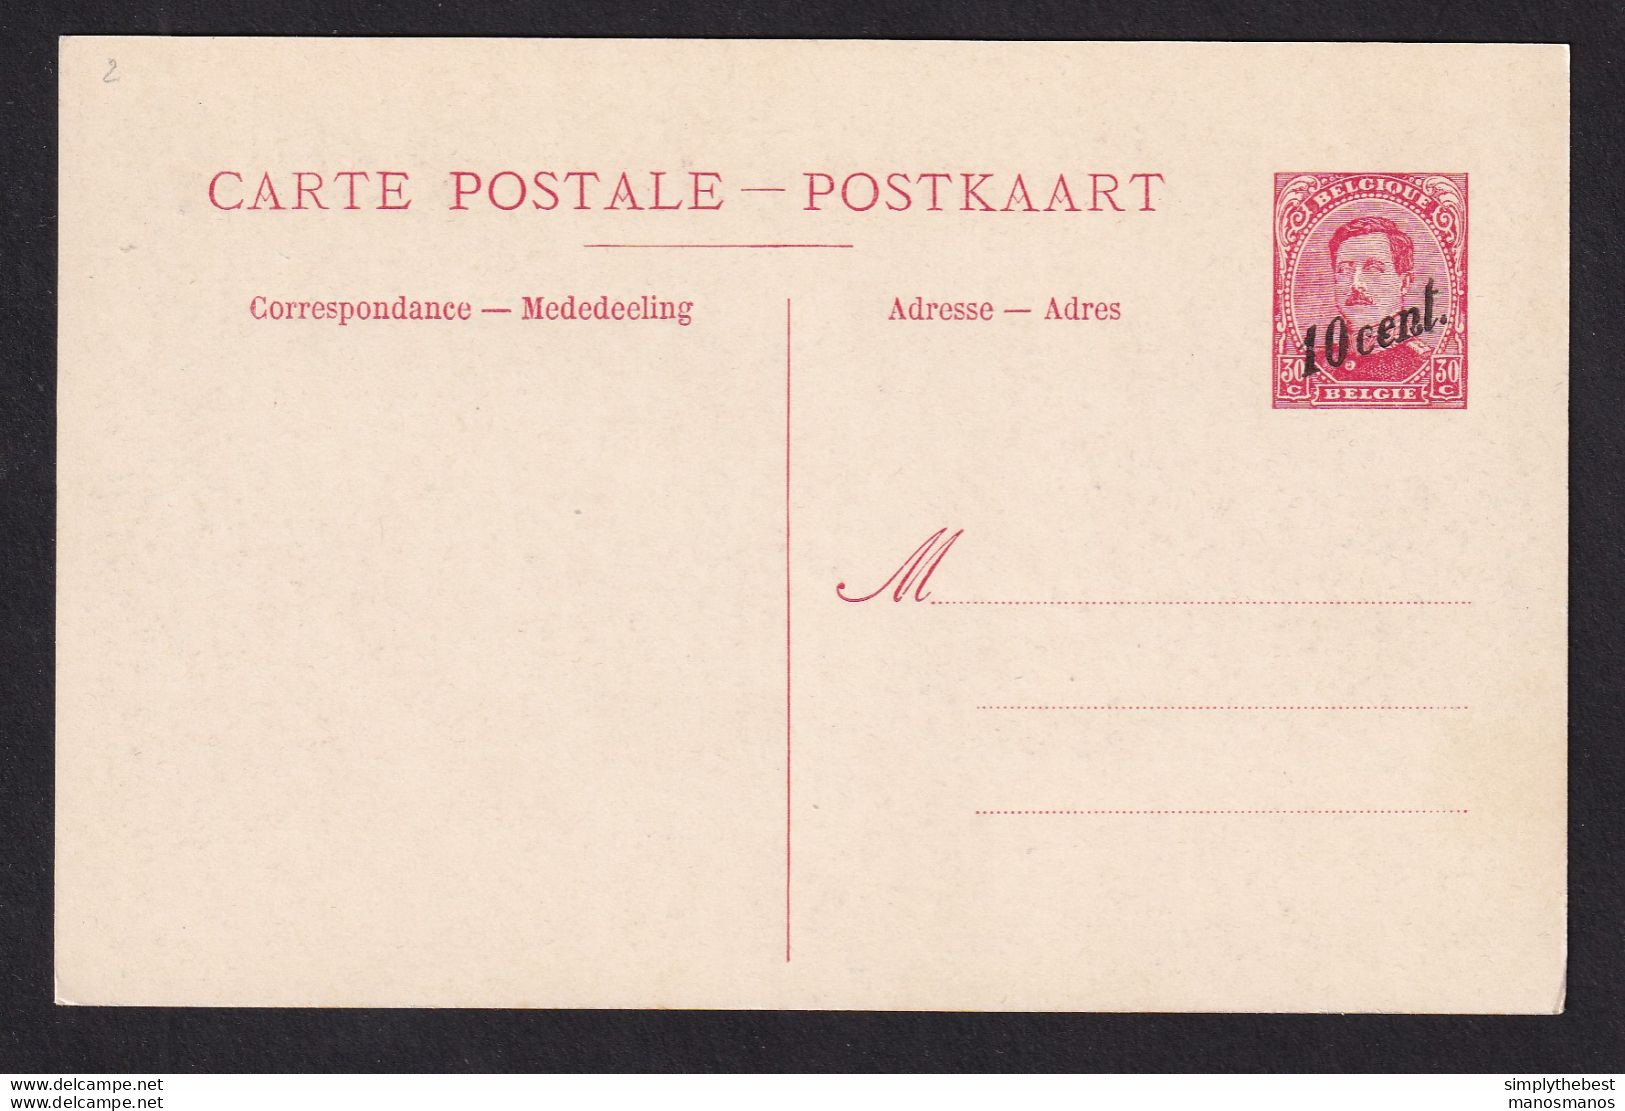 DDBB 437 - Carte Postale Paquebot 19 - 10 Cent. Sur 30 C - Non Utilisée - Schiffspost